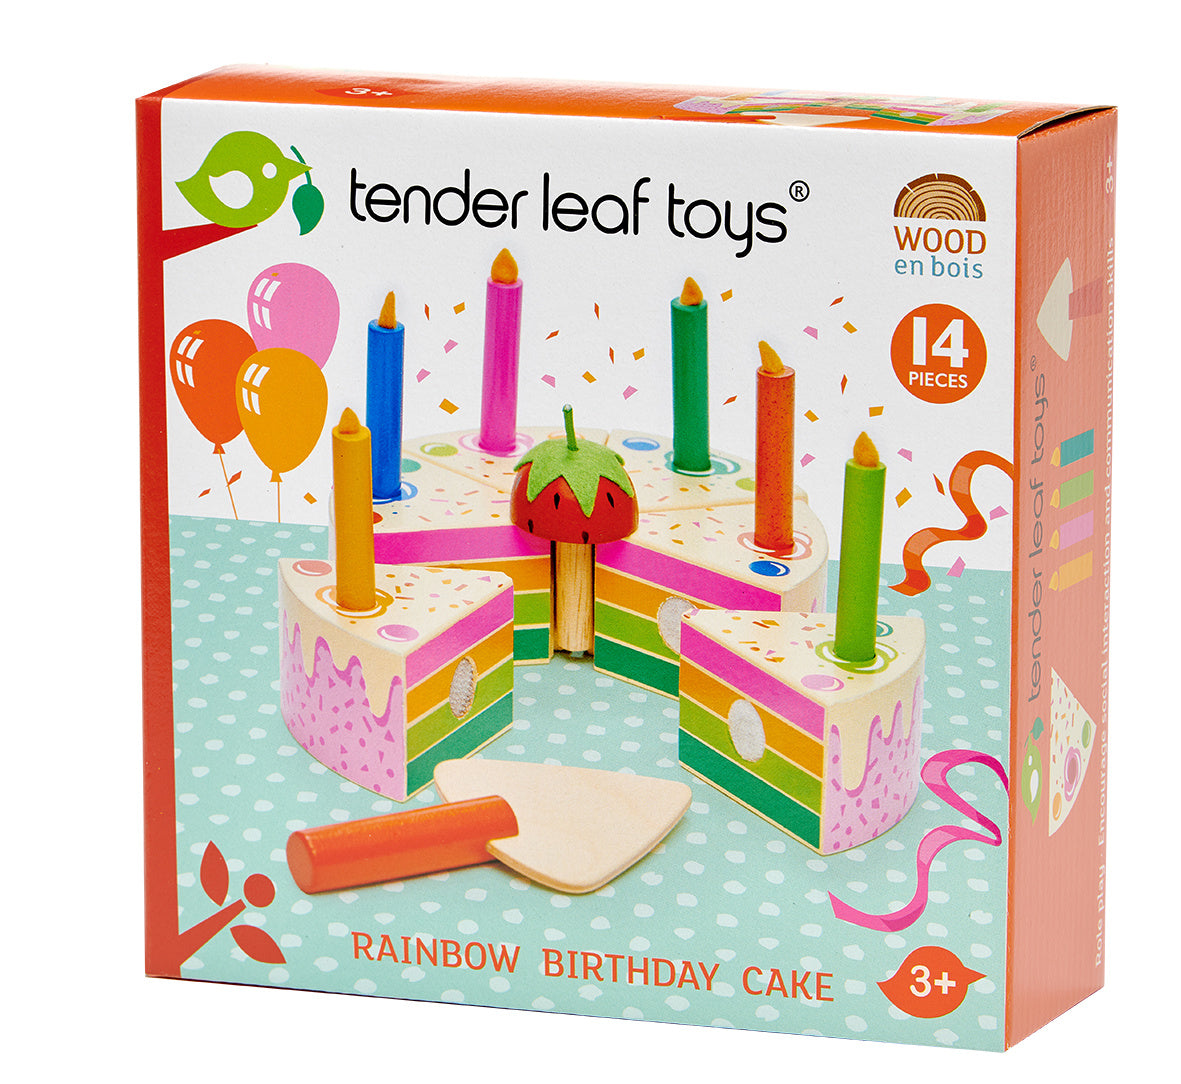 Tender Leaf Rainbow Birthday Cake